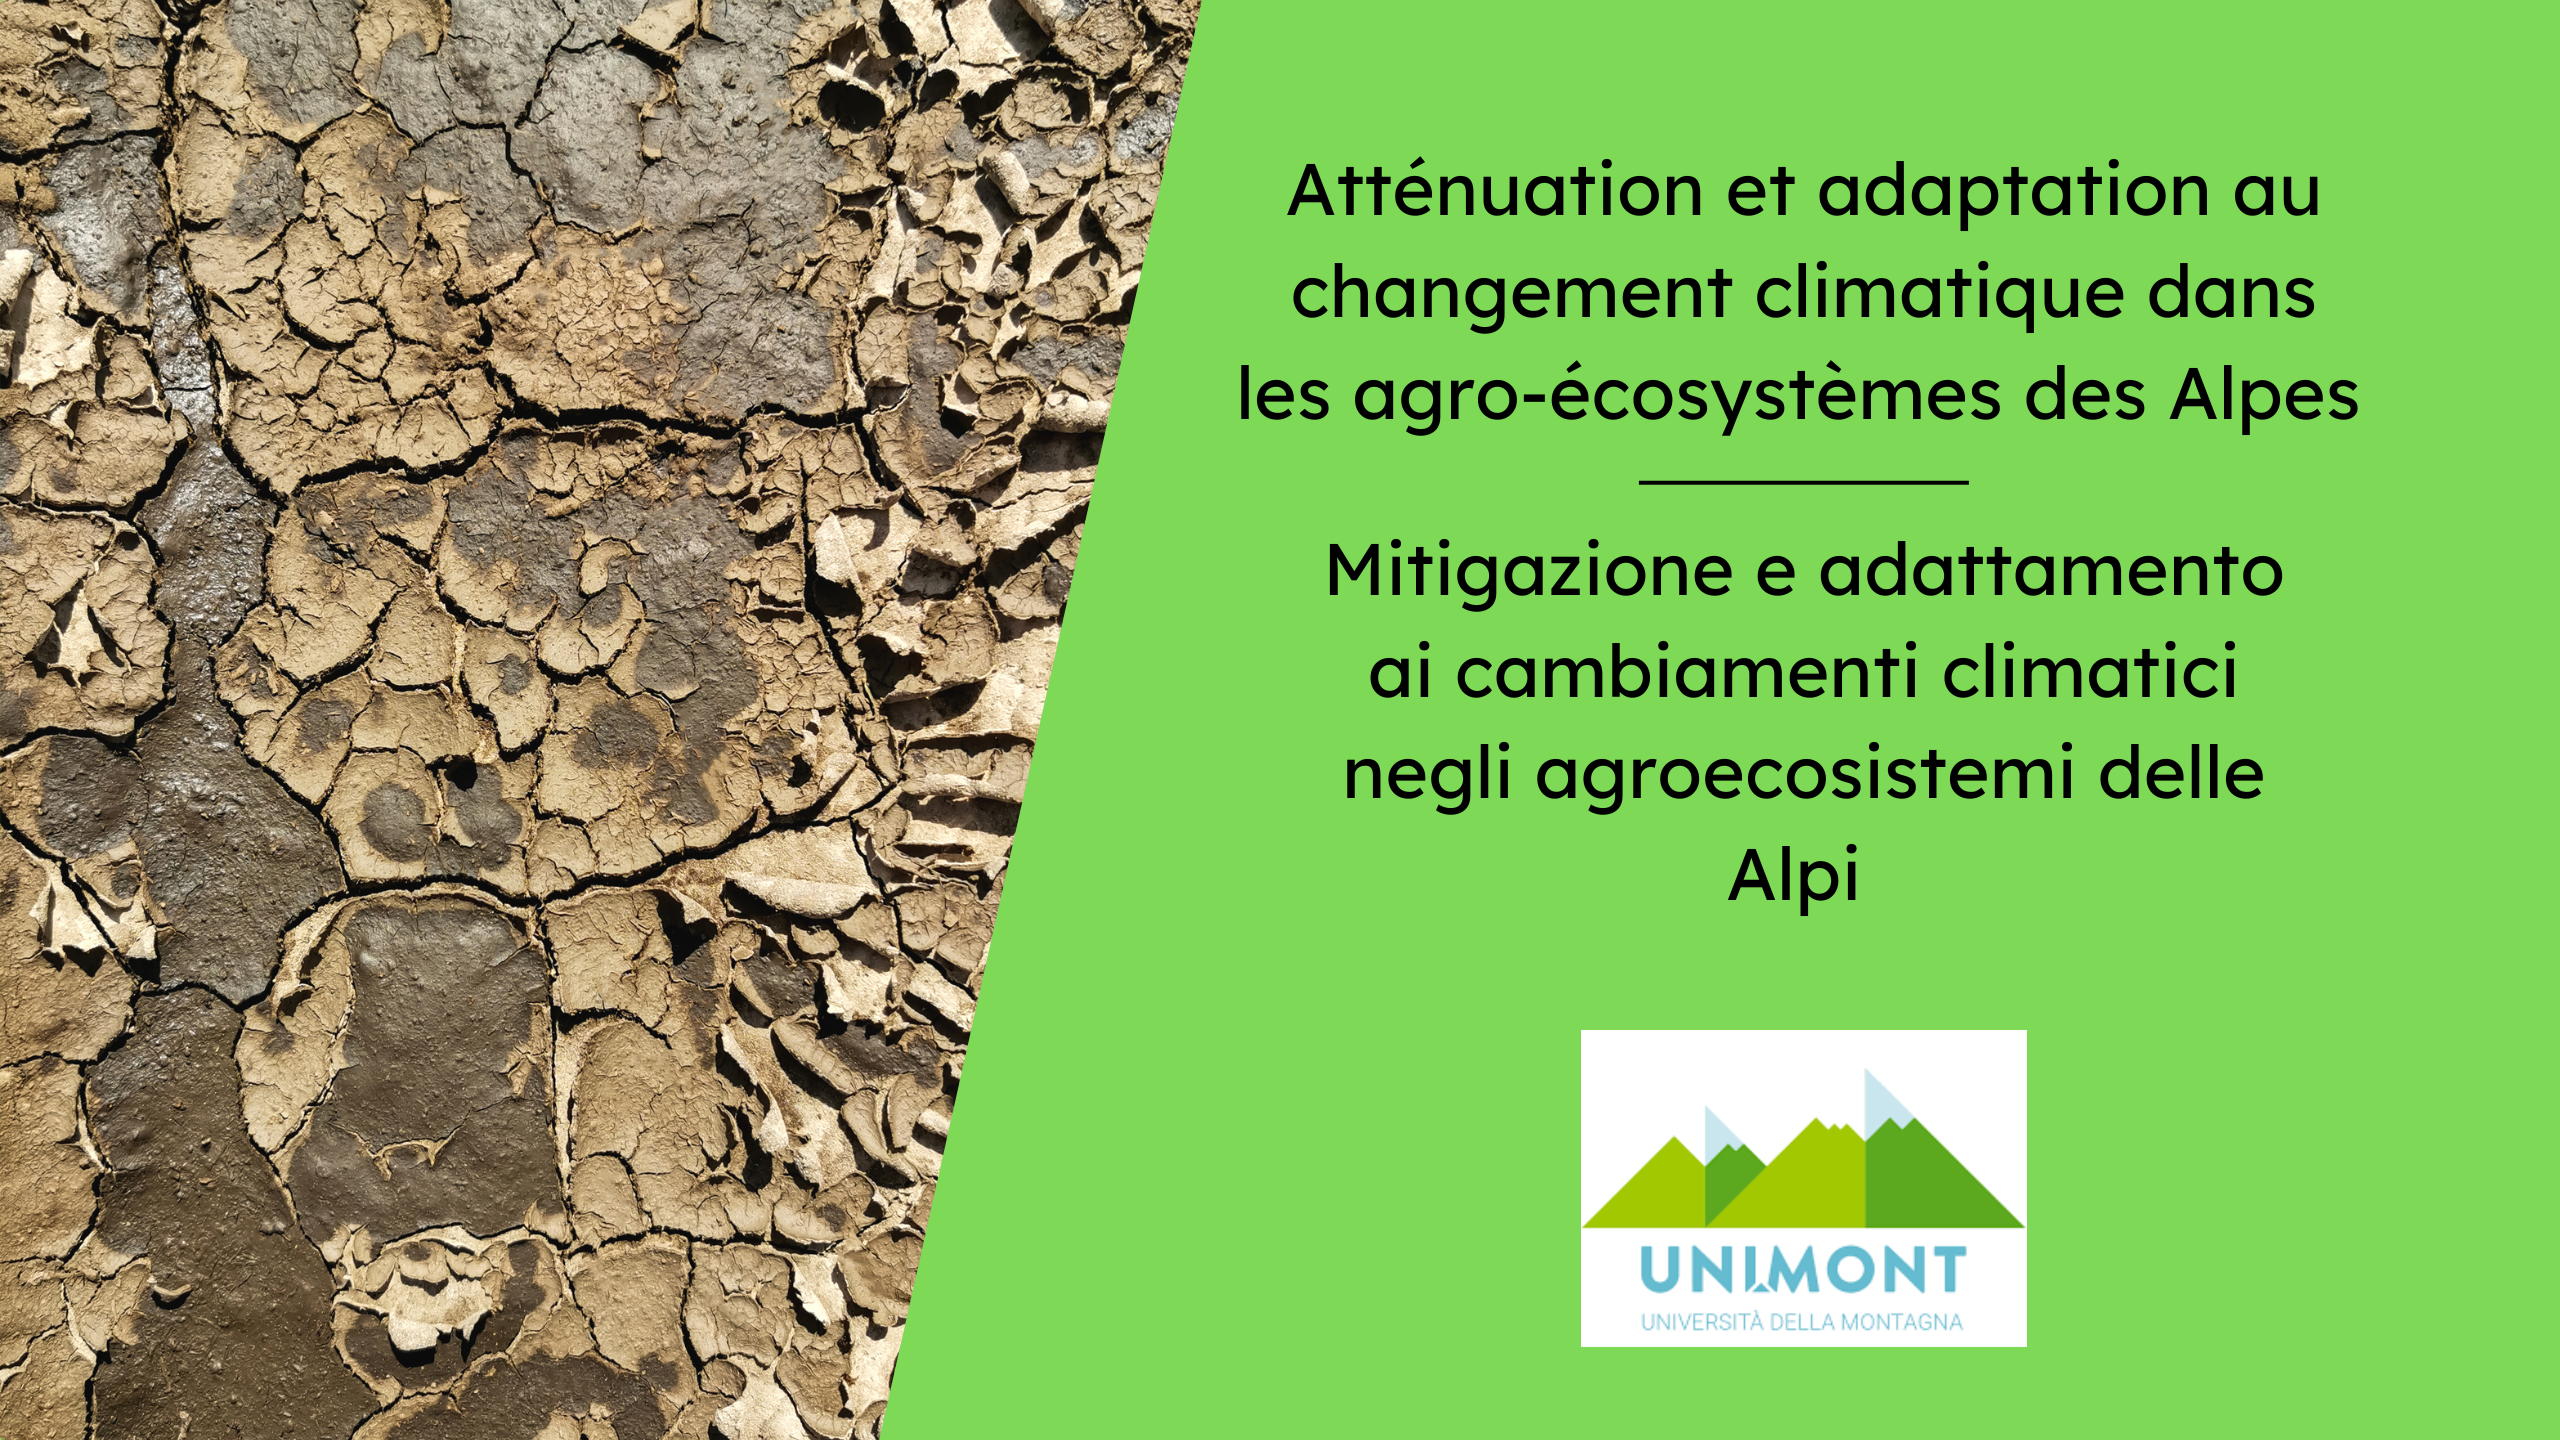 Atténuation et adaptation au changement climatique dans les agro-écosystèmes des Alpes